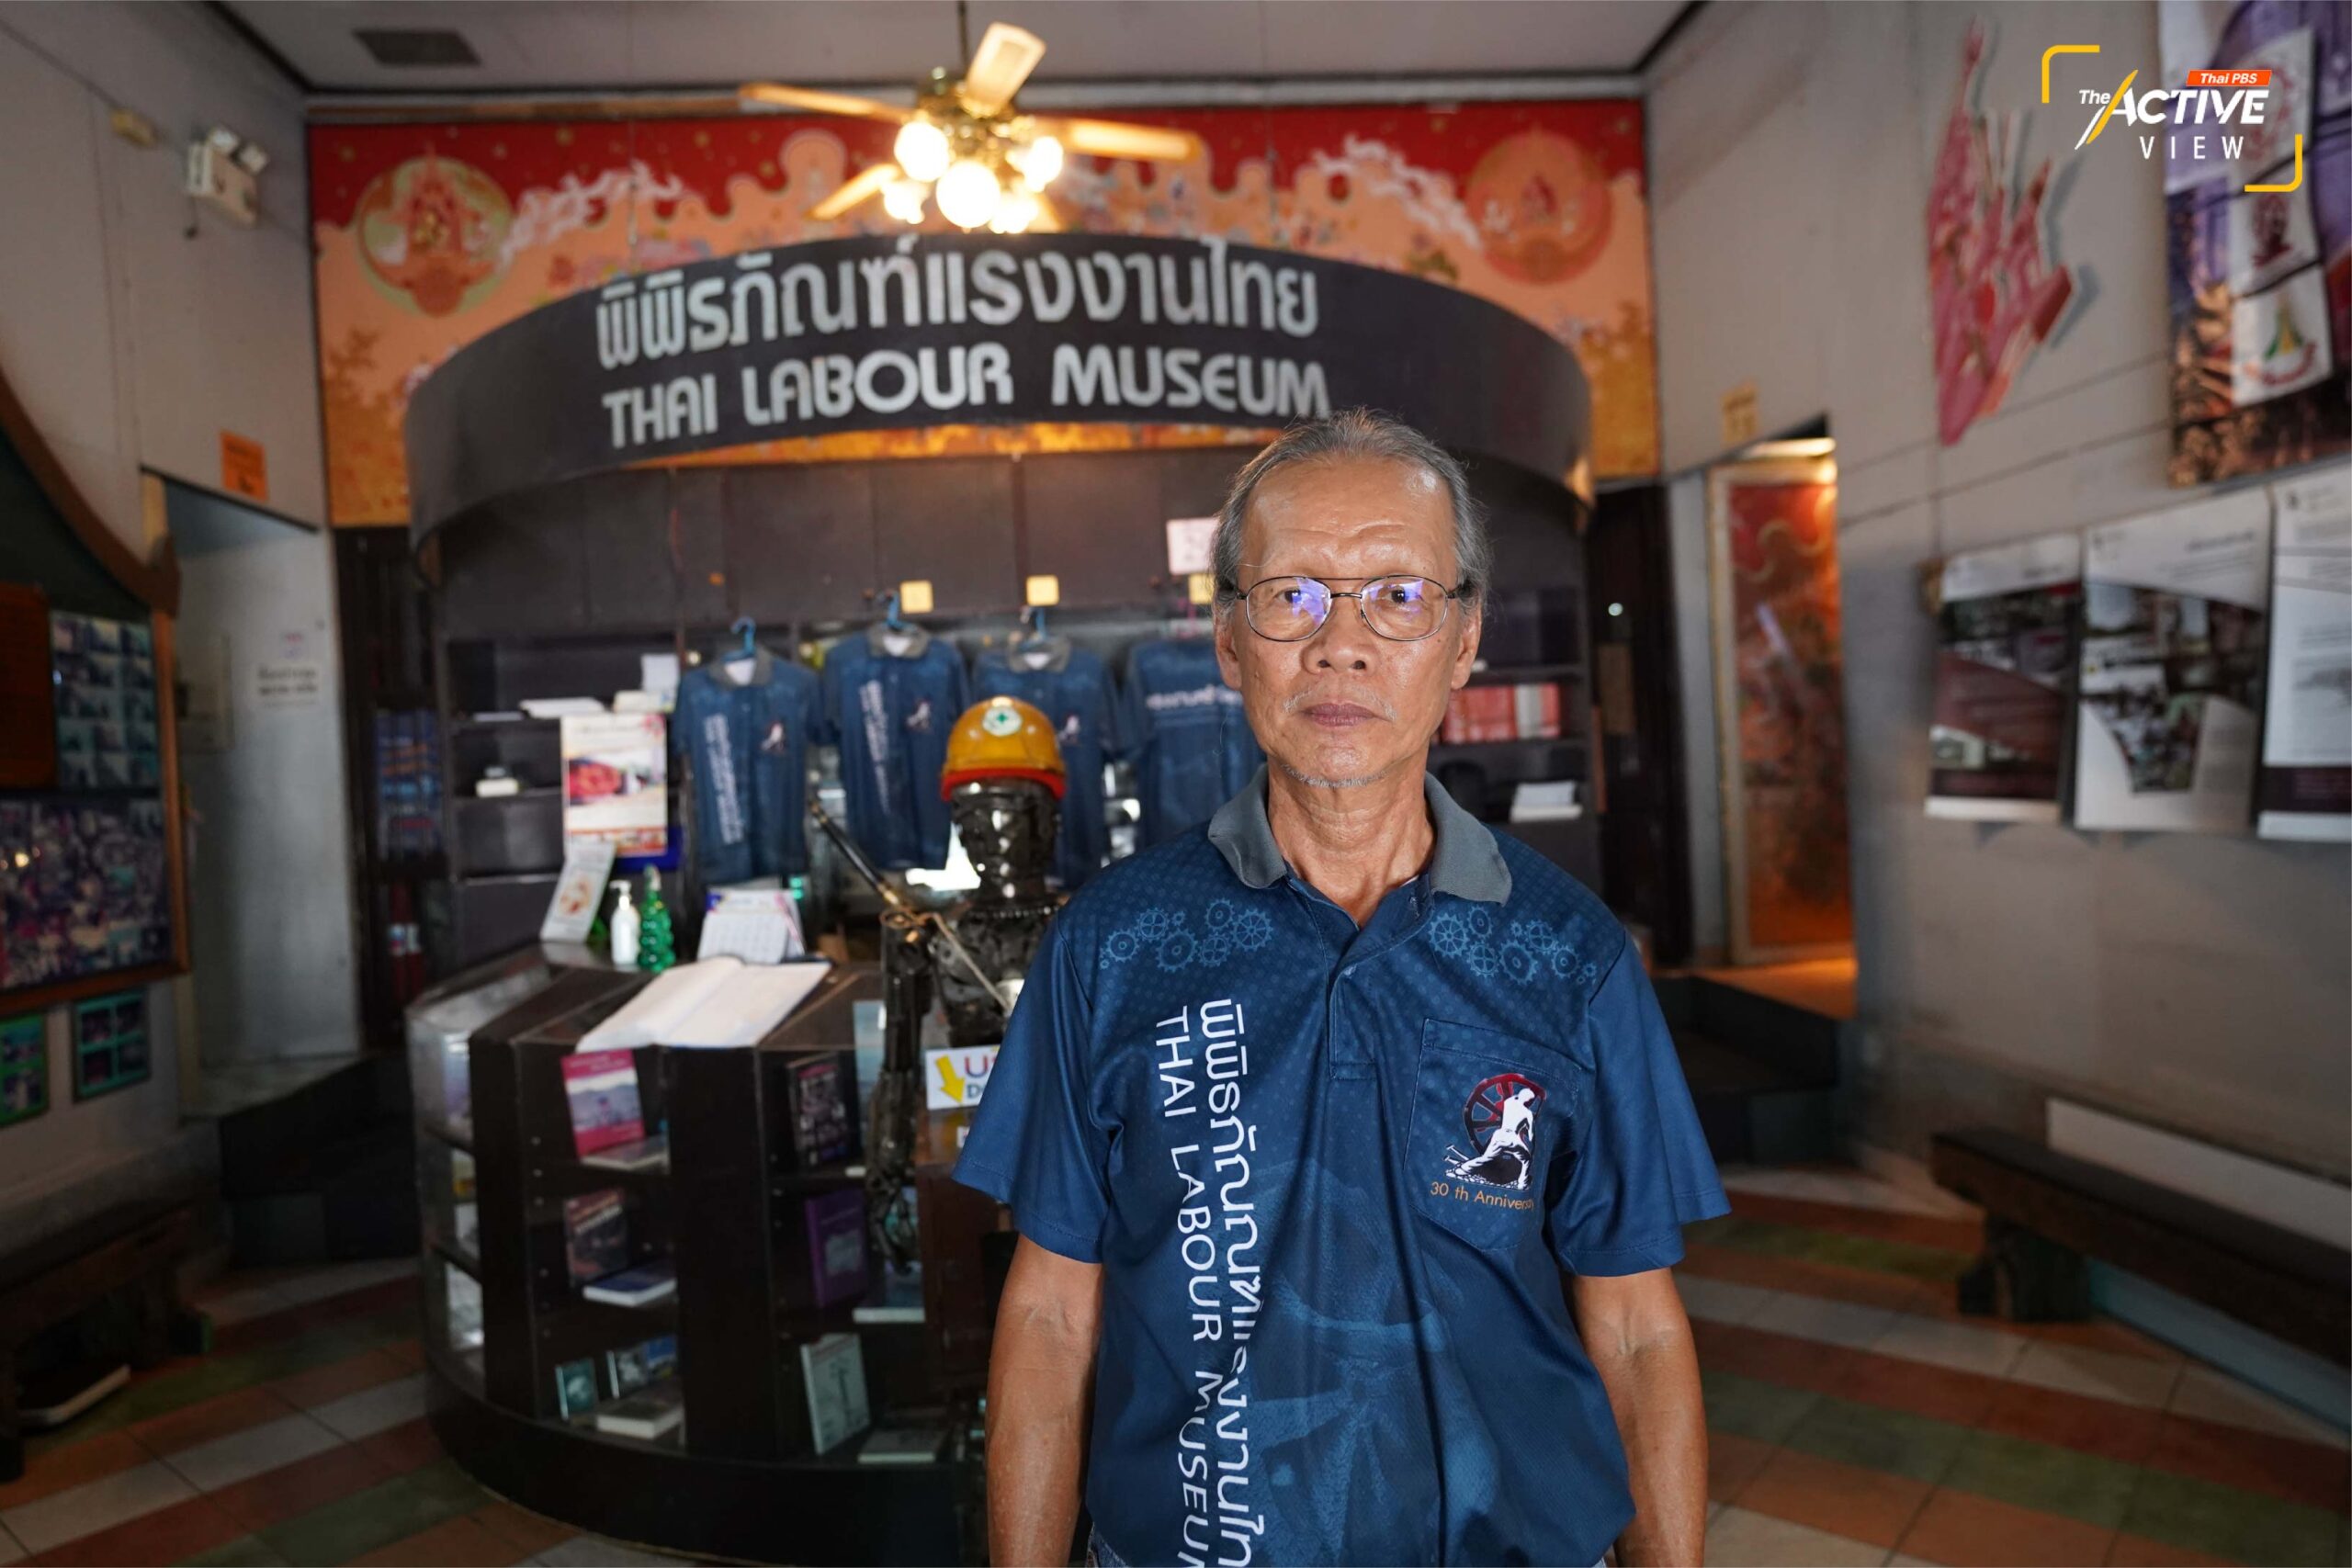 วิชัย นราไพบูลย์ ผู้จัดการพิพิธภัณฑ์แรงงานไทย พา The Active ชมนิทรรศการ จากชิ้นส่วน เครื่องมือ วัสดุ ที่ใช้ในการประกอบอาชีพของแรงงานไทย  พิพิธภัณฑ์แรงงานไทย ที่นี่ก่อตั้งเมื่อ 17 ต.ค. 2536 เพื่อถ่ายทอดเรื่องราวคุณค่าของแรงงาน ที่มีส่วนสำคัญในการขับเคลื่อนเศรษฐกิจประเทศ ซึ่งห่างหายไปจากหน้าประวัติศาสตร์ ทำให้คุณภาพชีวิตของแรงงาน ยังต่ำกว่ามาตรฐาน  คาดหวังให้ผู้คนได้เข้าใจและมองเห็น “คุณค่า” ของแรงงาน 